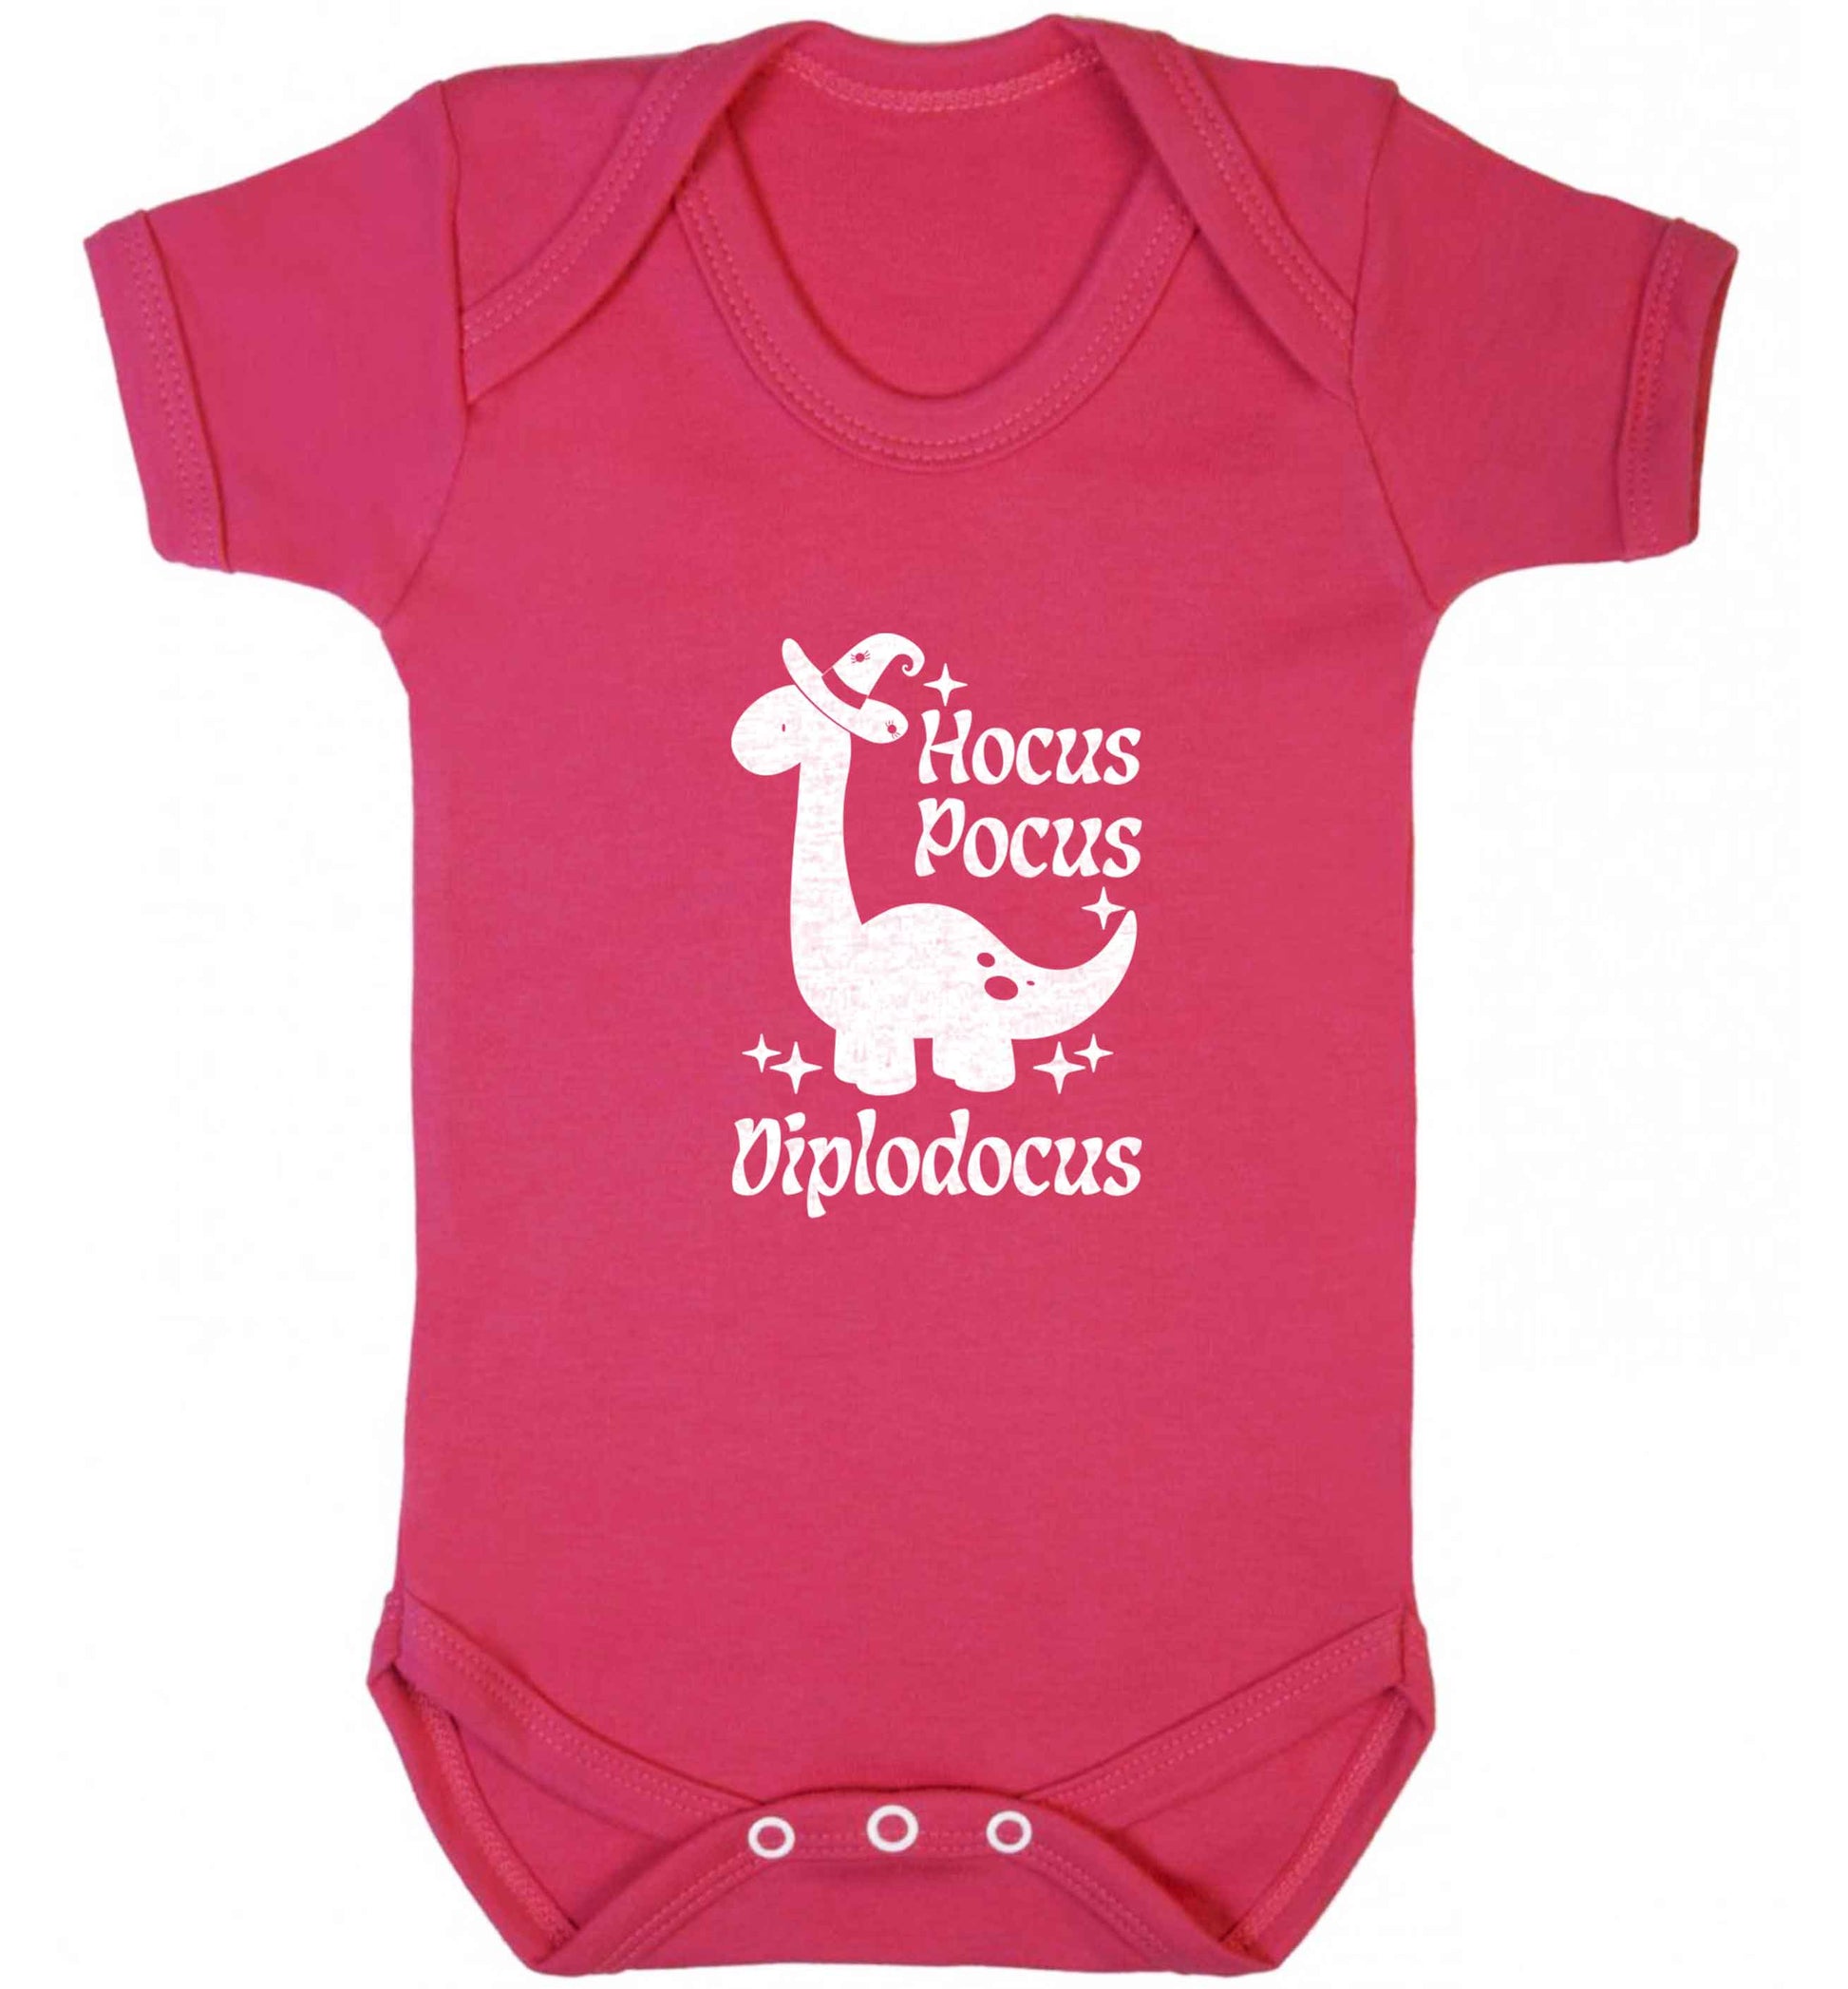 Hocus pocus diplodocus Kit baby vest dark pink 18-24 months